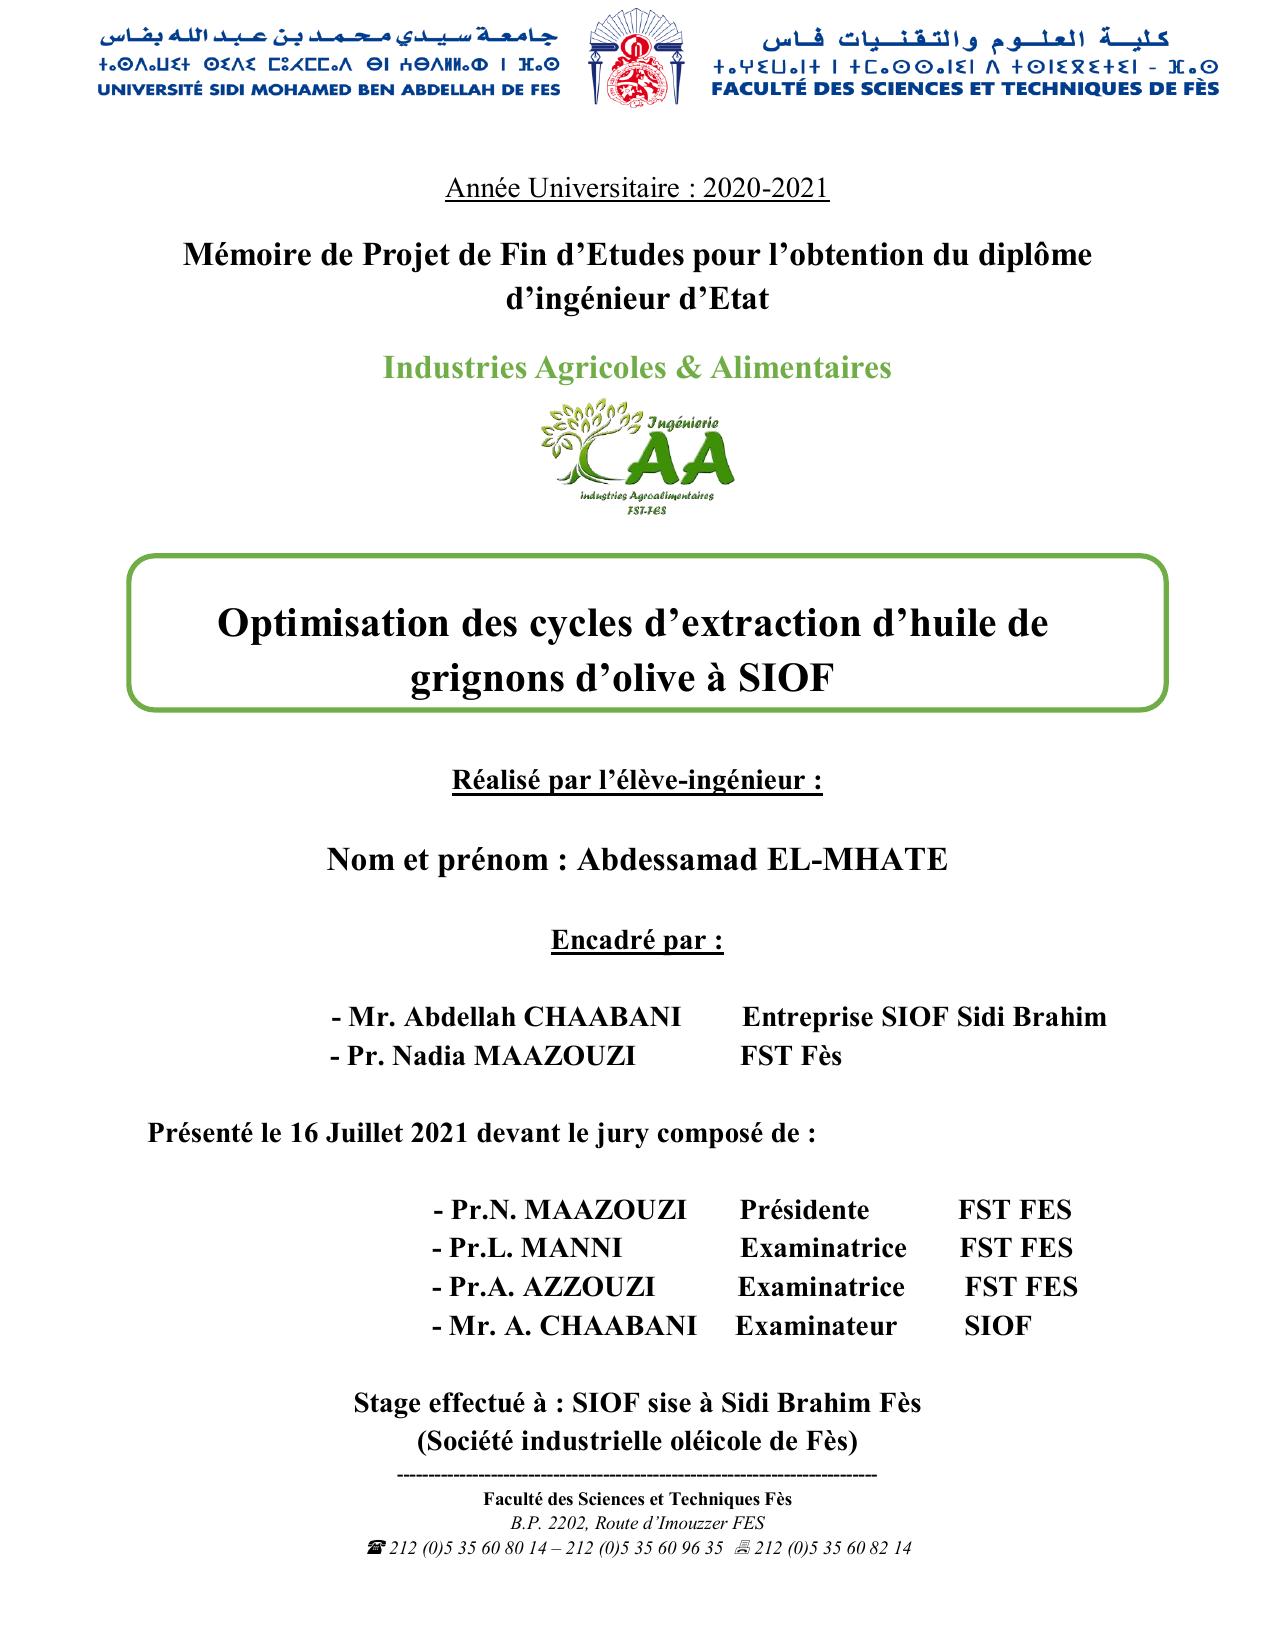 Optimisation des cycles d’extraction d’huile de grignons d’olive à SIOF